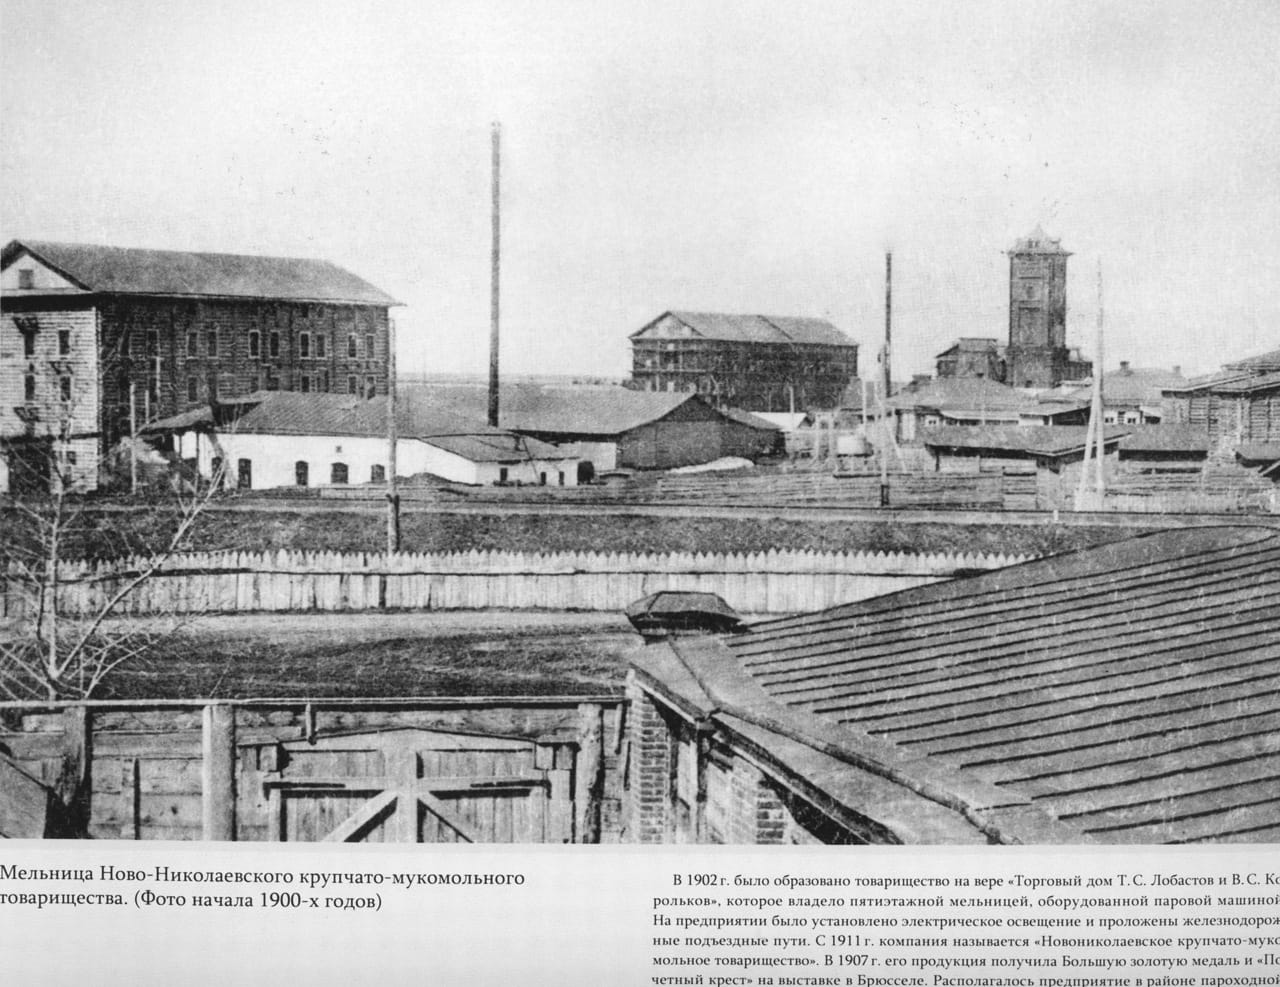 Мельница крупчато-мукомольного товарищества, 1900-е годы